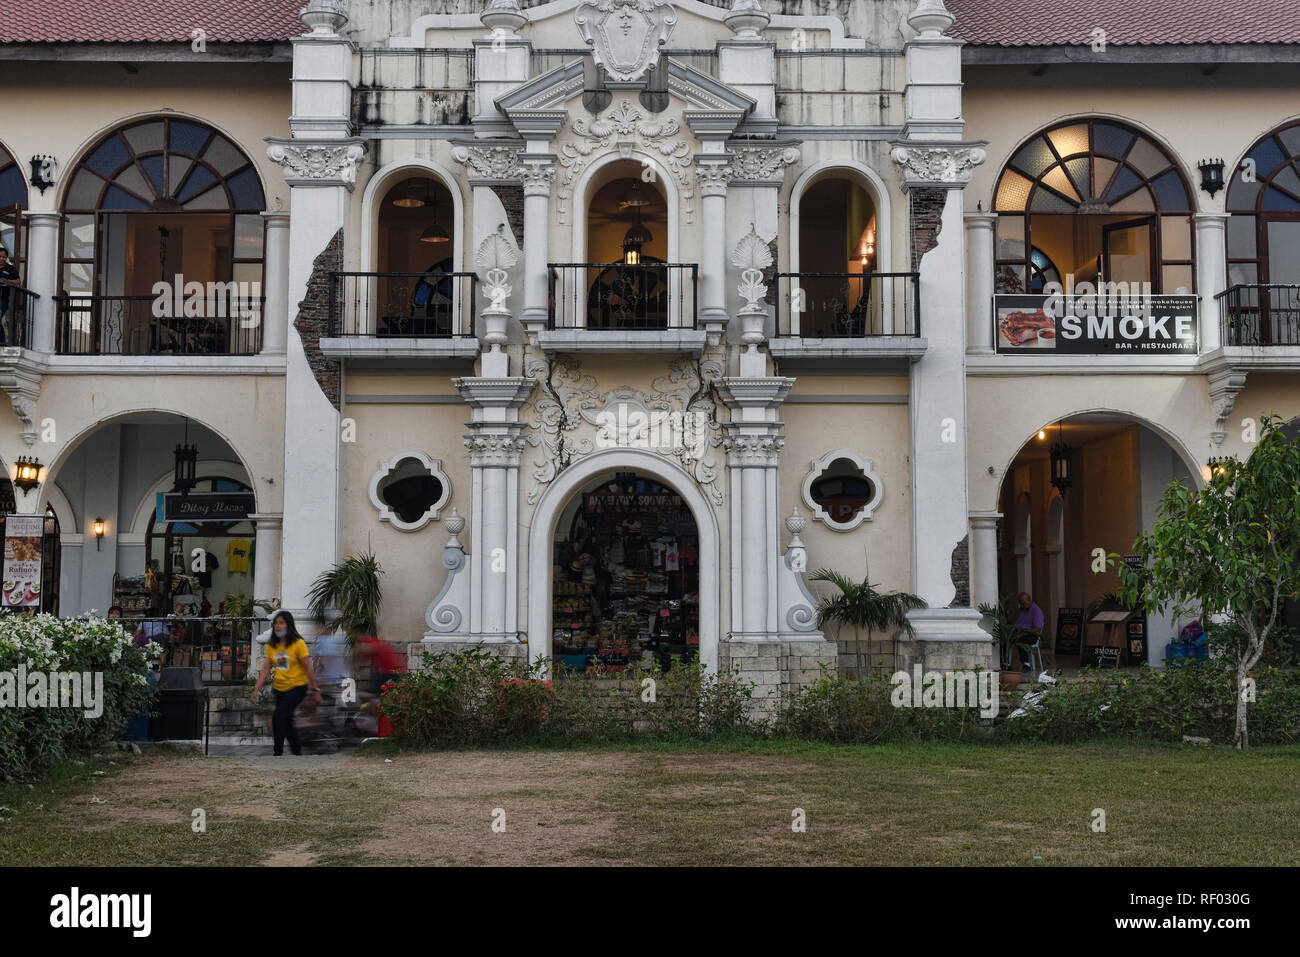 Restaurant sans fumée situé dans le magnifique Paseo de Paoay espagnol Colonial building, Ilocos Norte, Philippines Banque D'Images